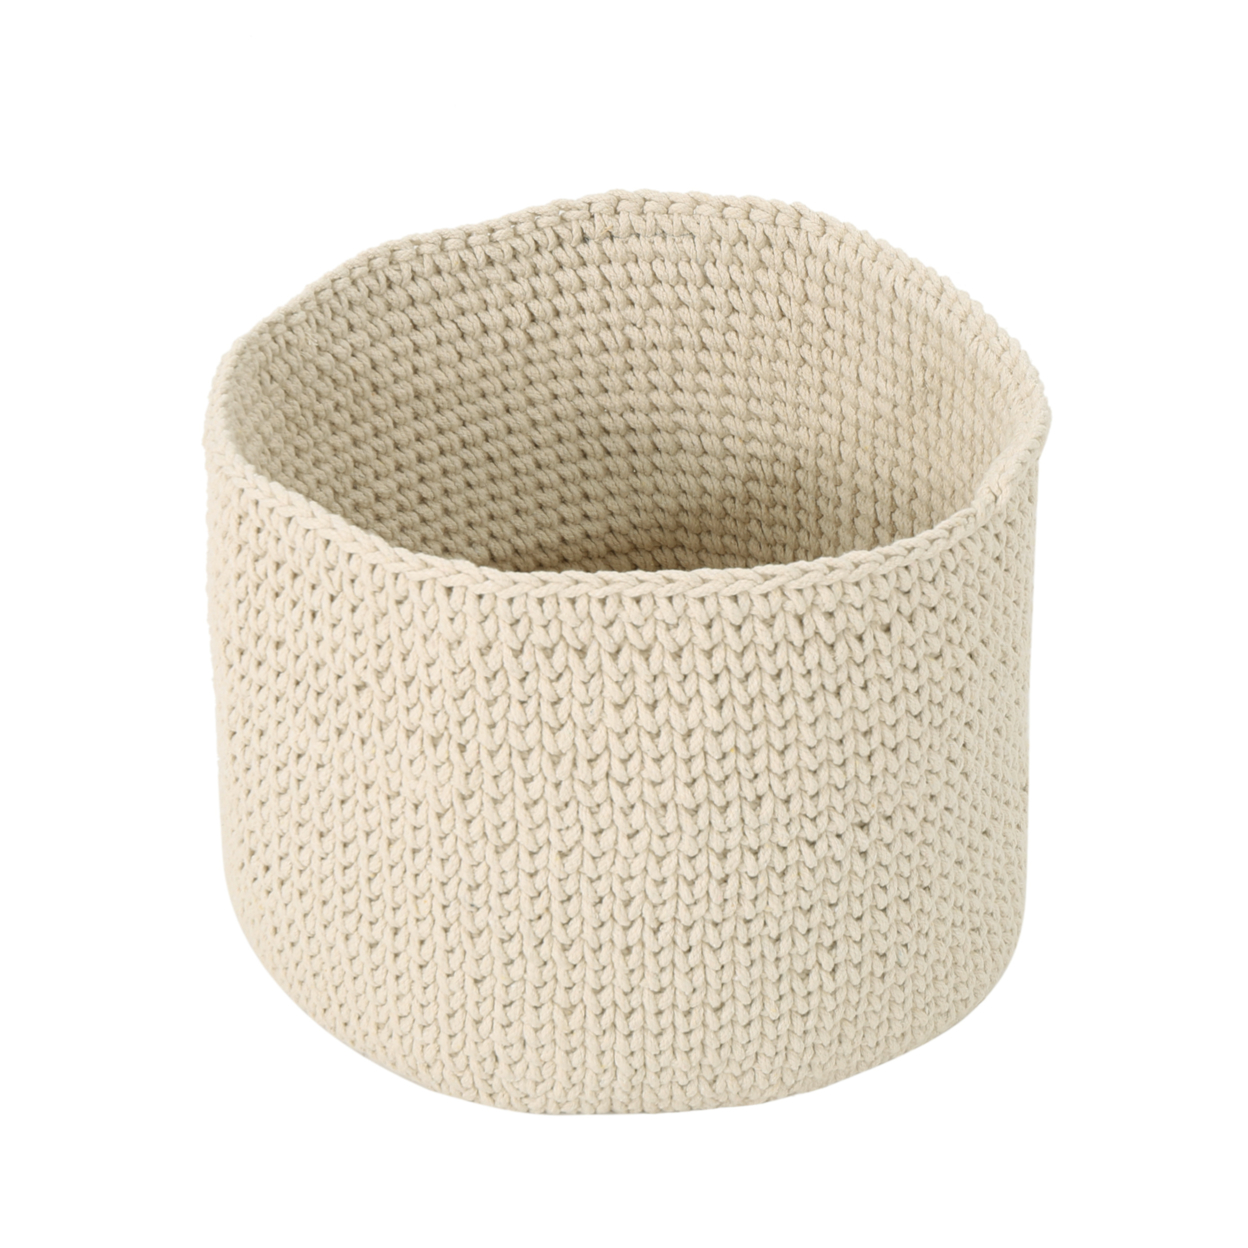 Moore Knitten Cotton Sundries Basket - Coffee